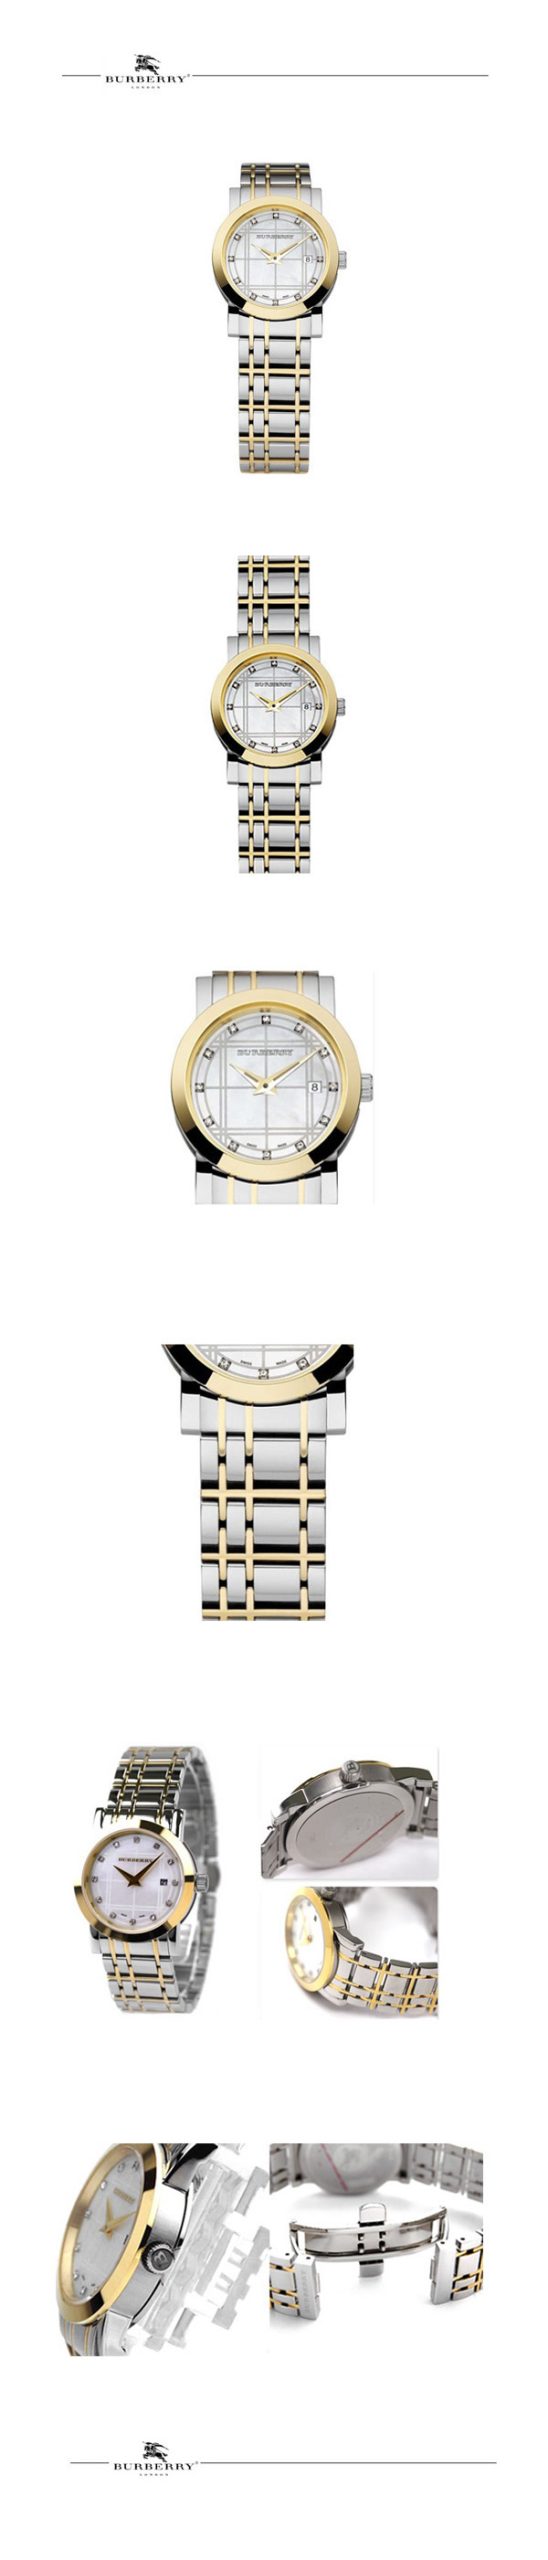 2022122814370922 scaled - BURBERRY 博柏利手錶 英倫經典格紋彩色貝殼鉆面女錶 BU1375。獨特的款式設計￥1169